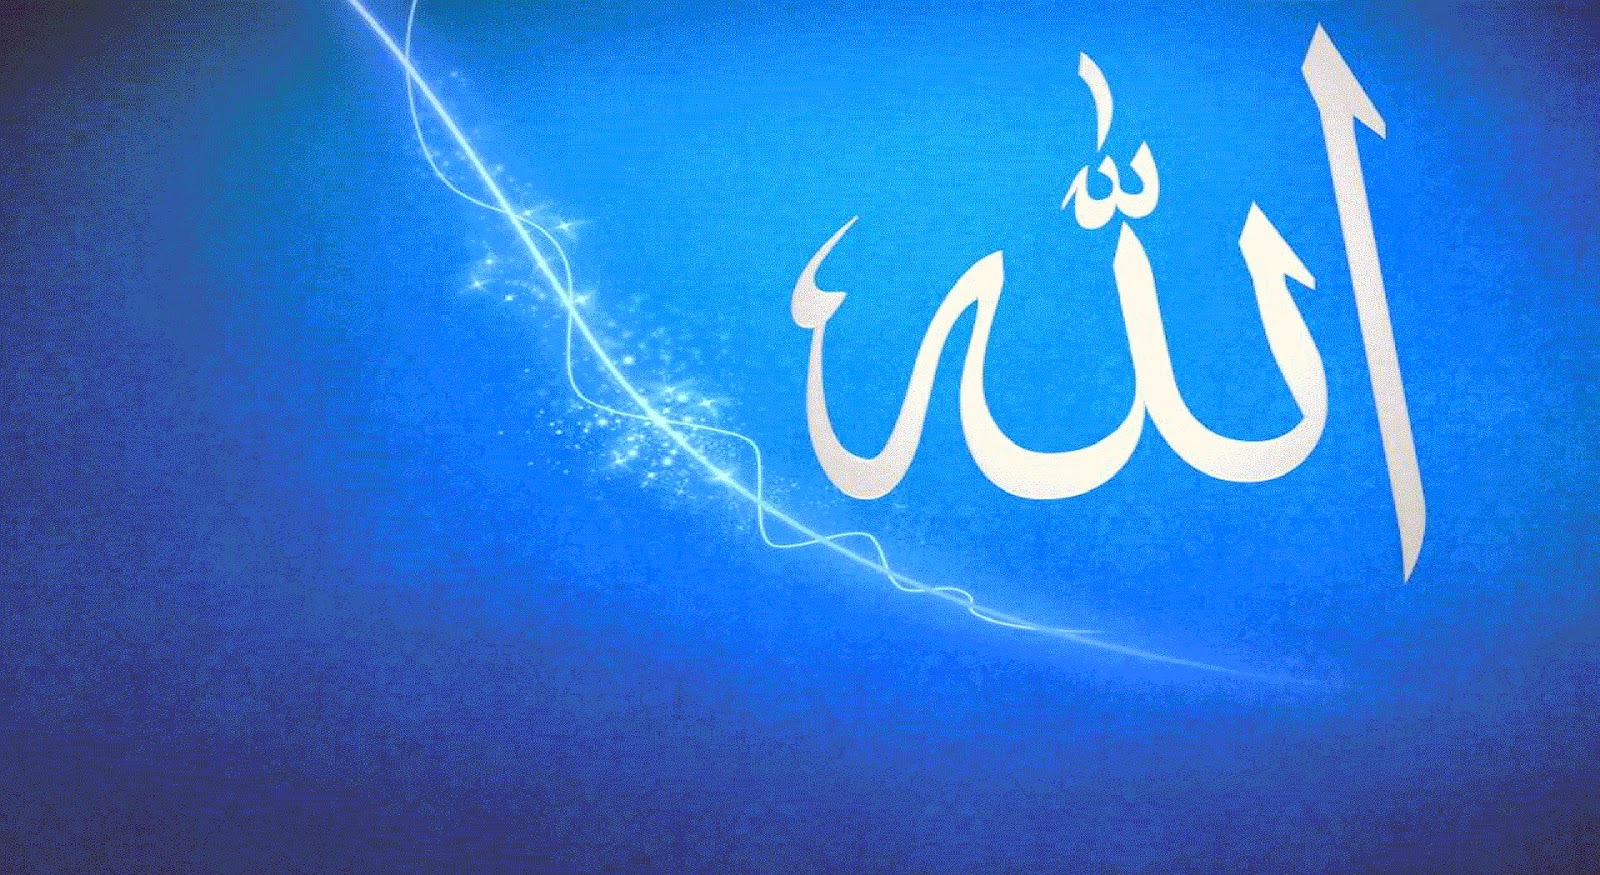  ALLAH name Desktop Wallpaper Allah hd wallpaper Allah Name Islam